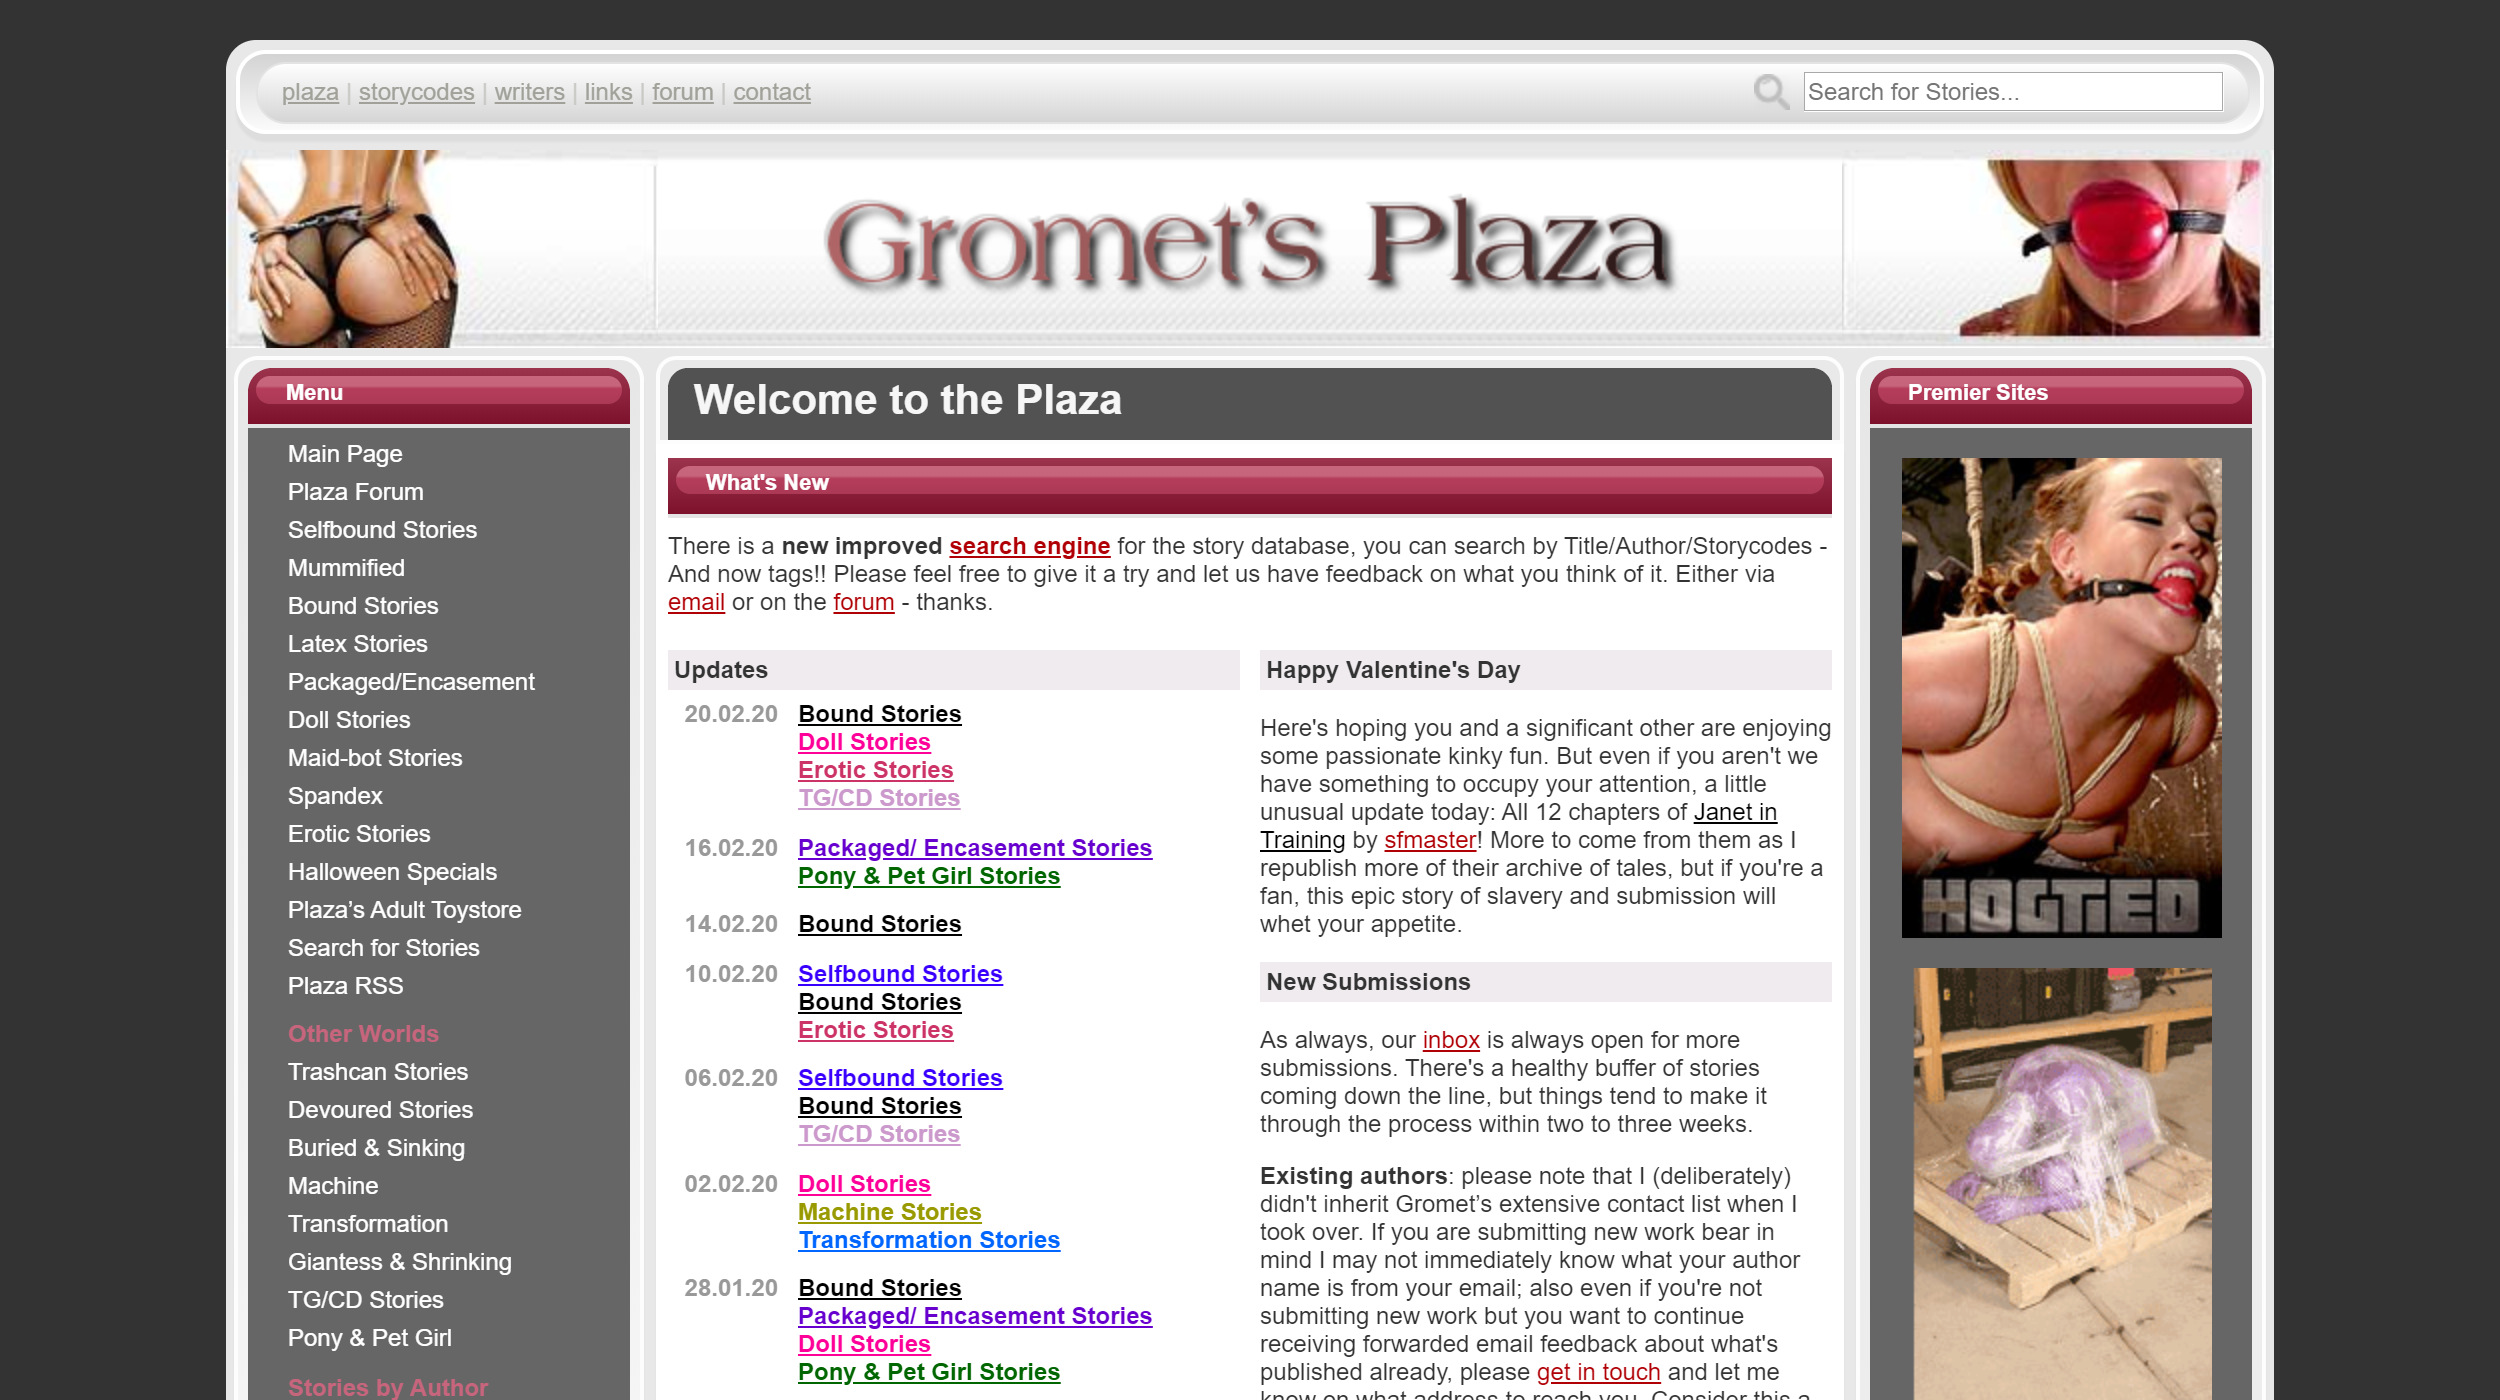 Gromets Plaza